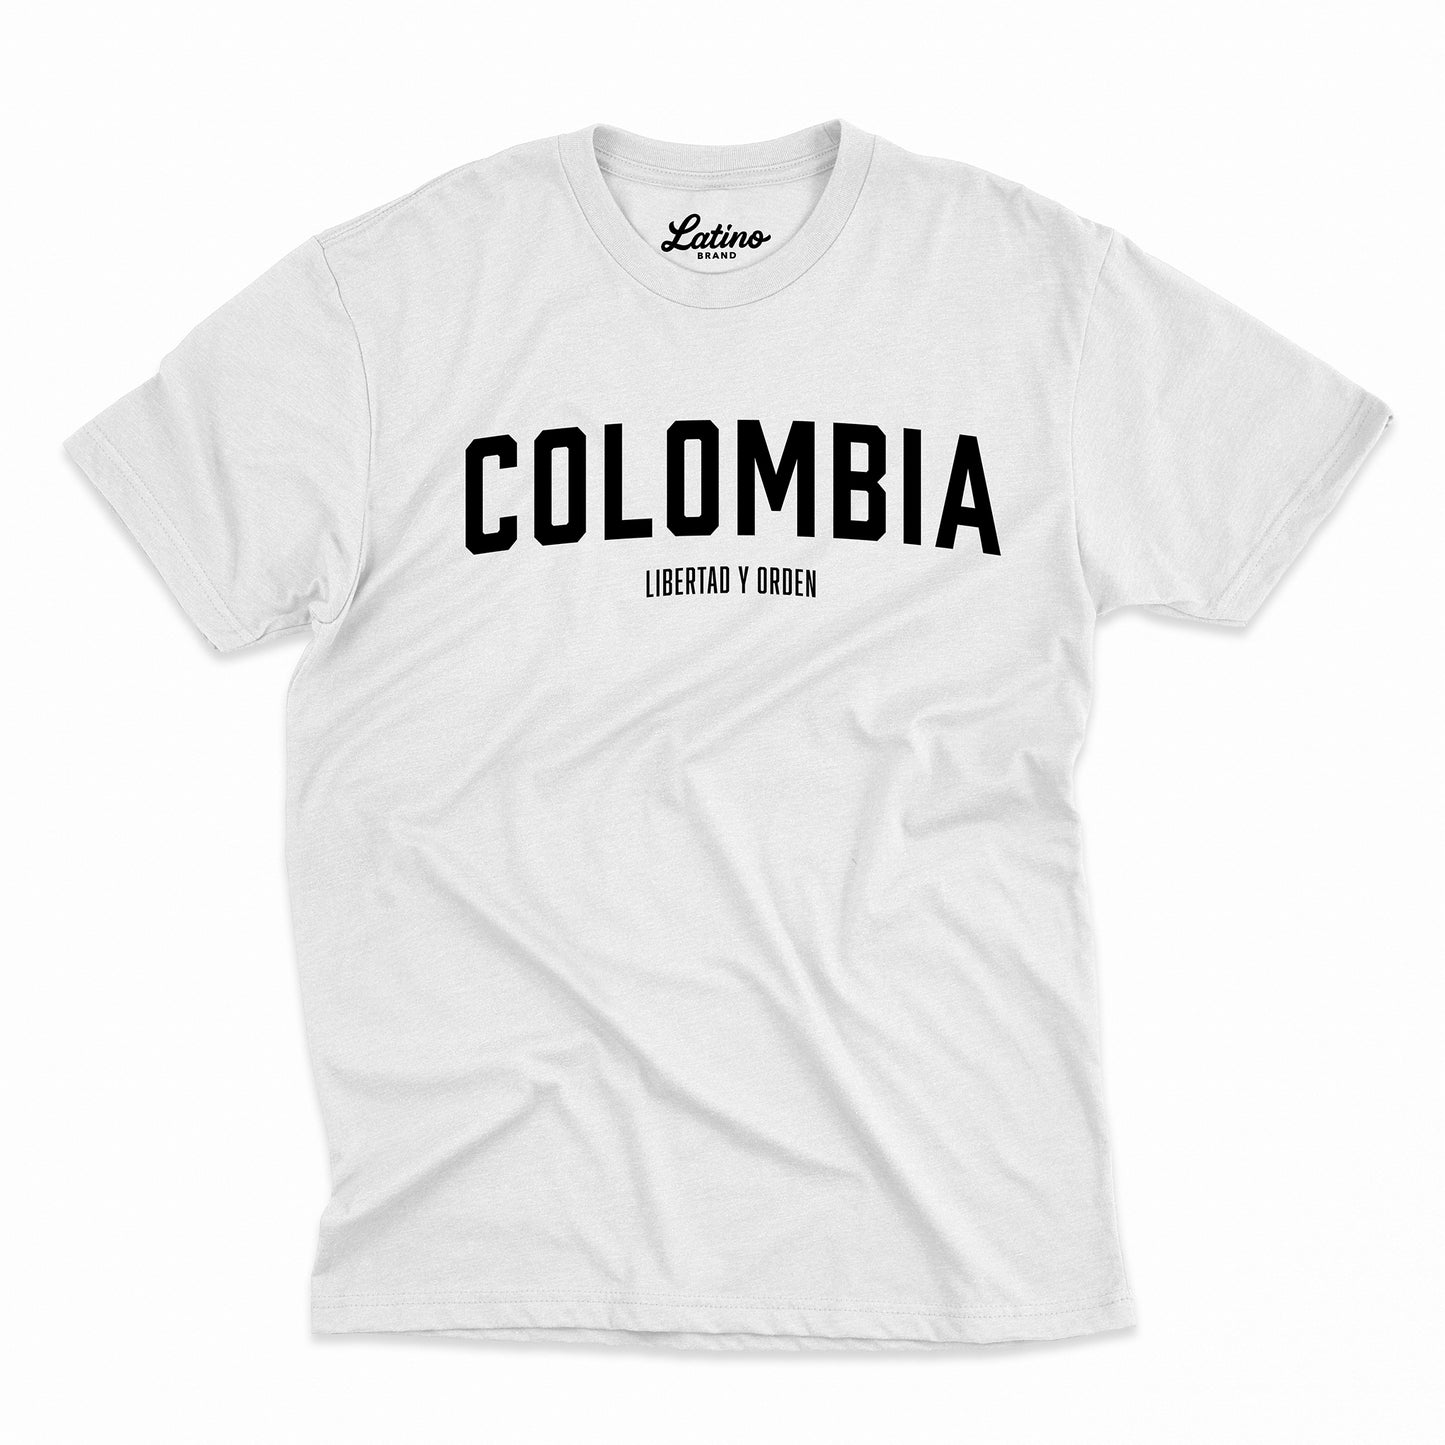 🇨🇴 Colombia - Libertad Y Orden